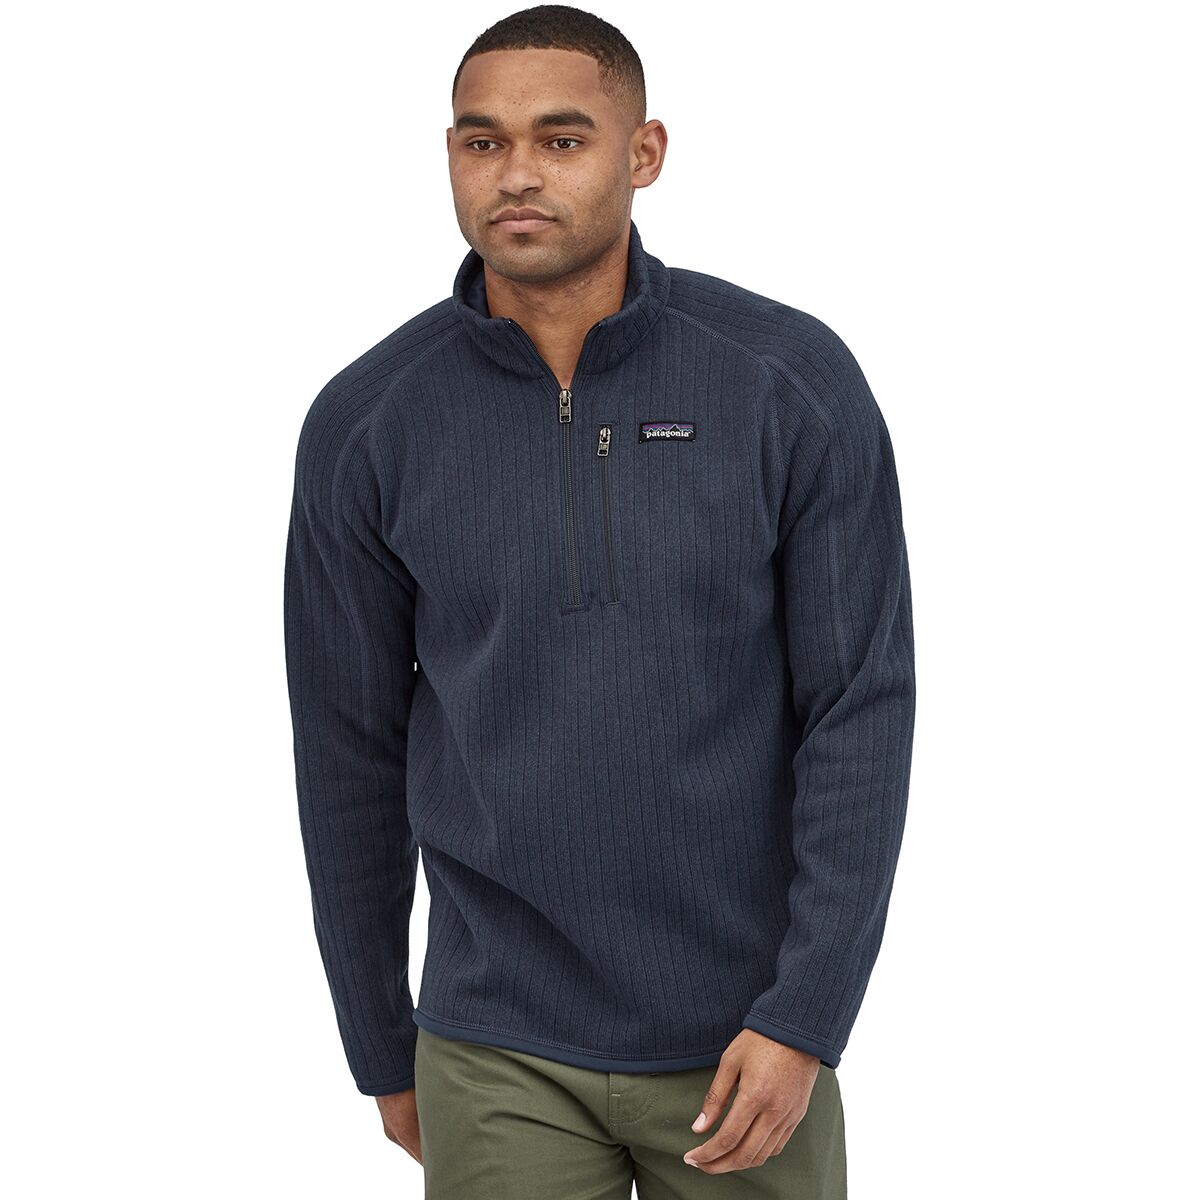 Better Sweater Rib Knit 1/4-Zip Fleece Jacket - Men